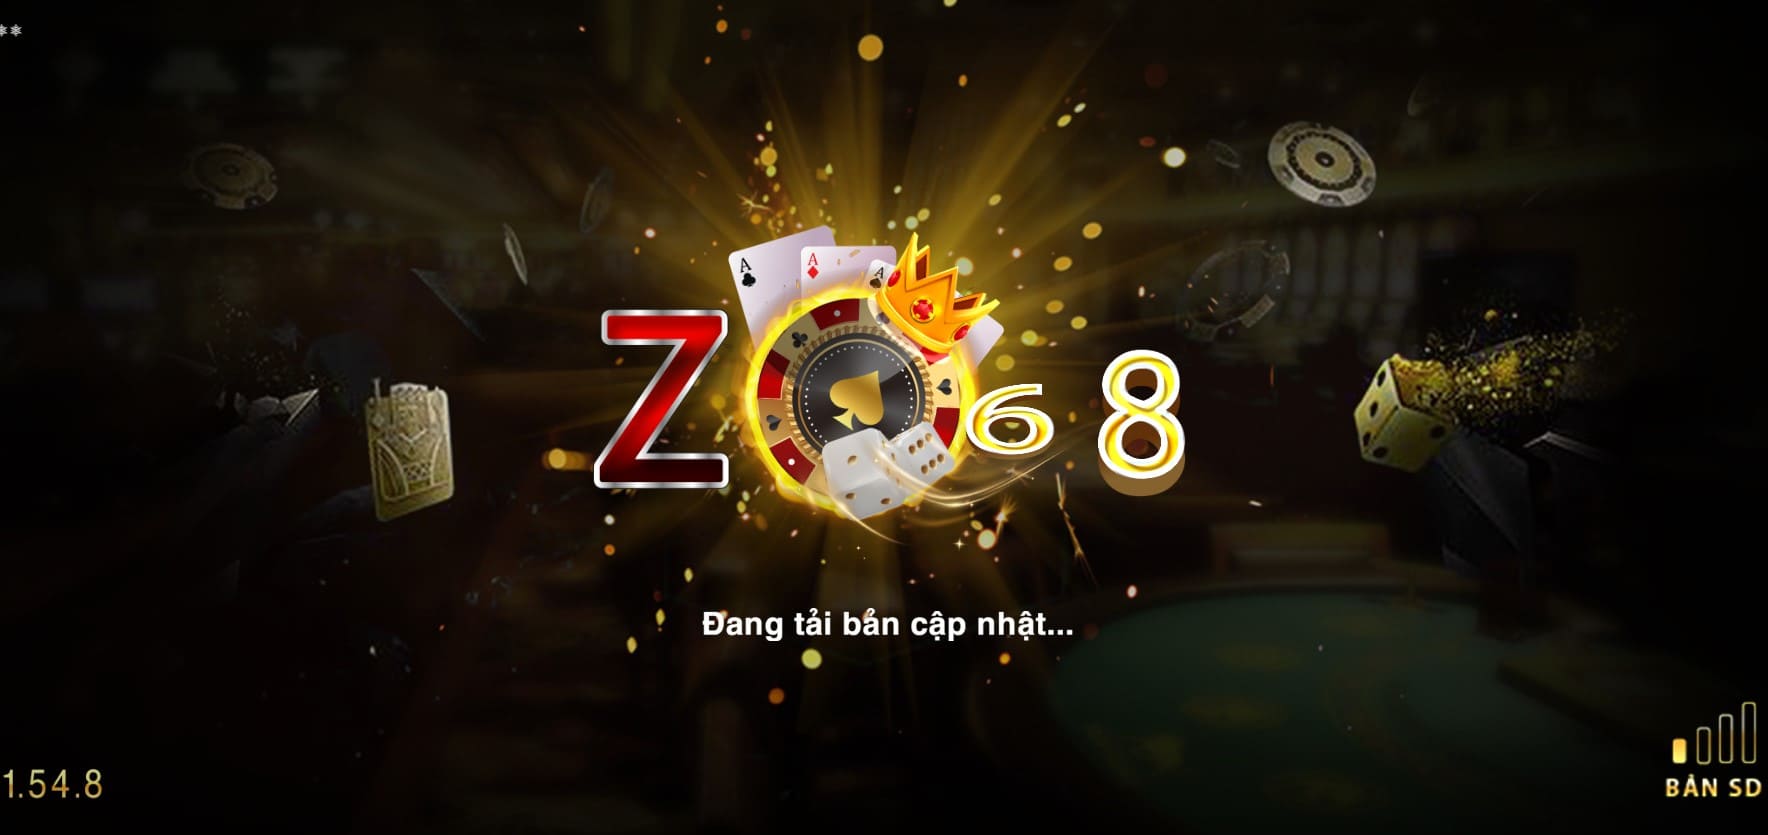 Zo68 pro ông trùm casino | Thanh toán Zo68.pro 1:1